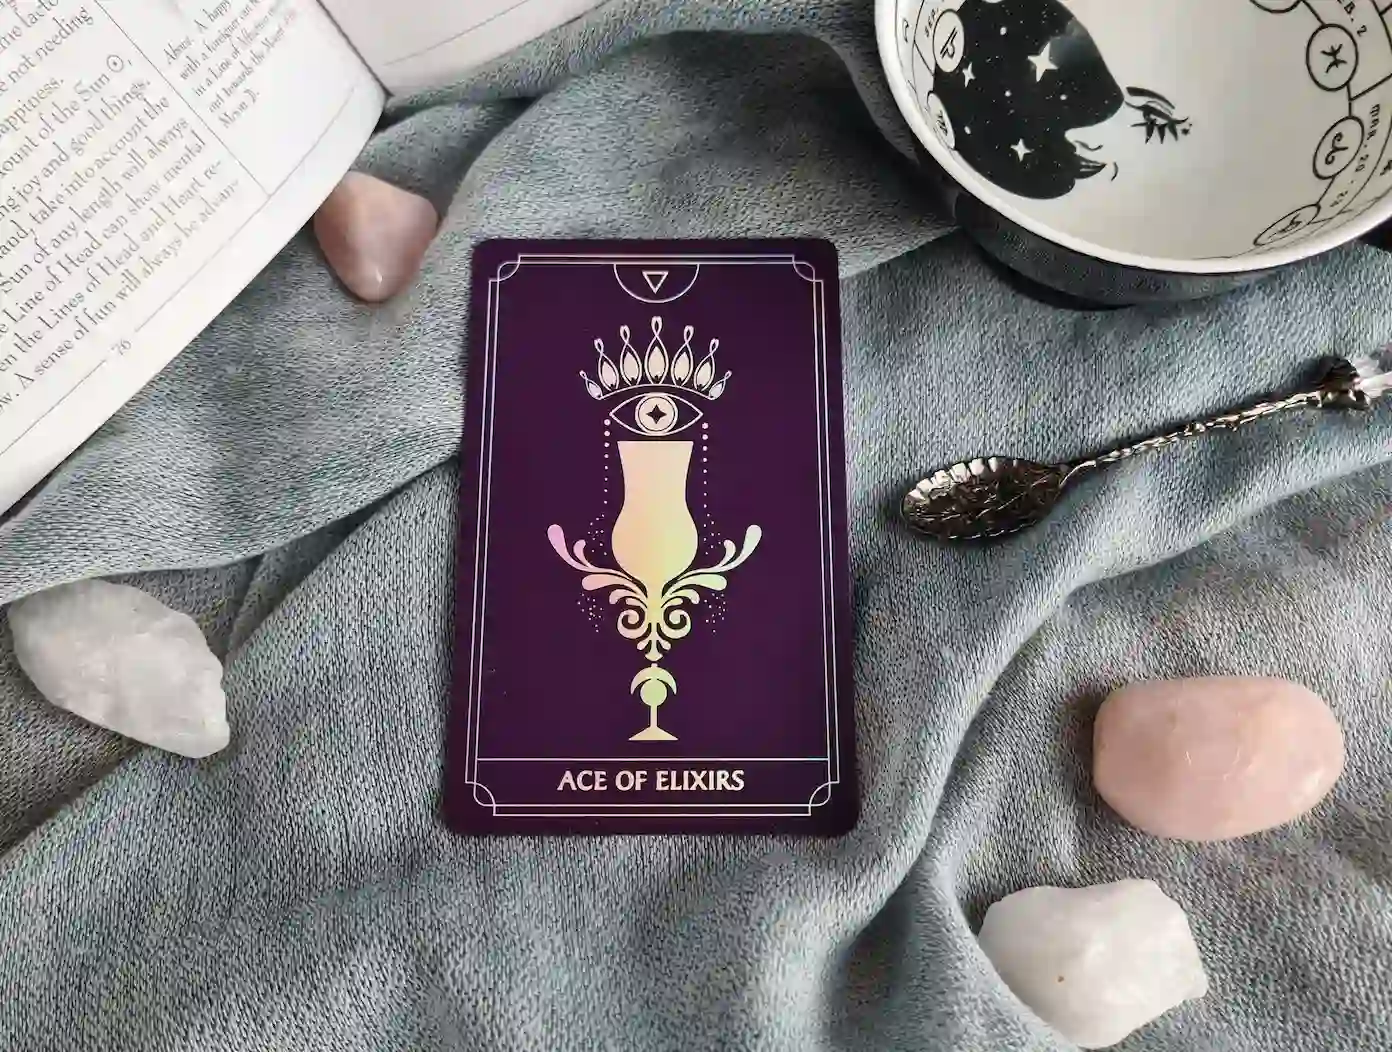 Ace of Cups tarot card